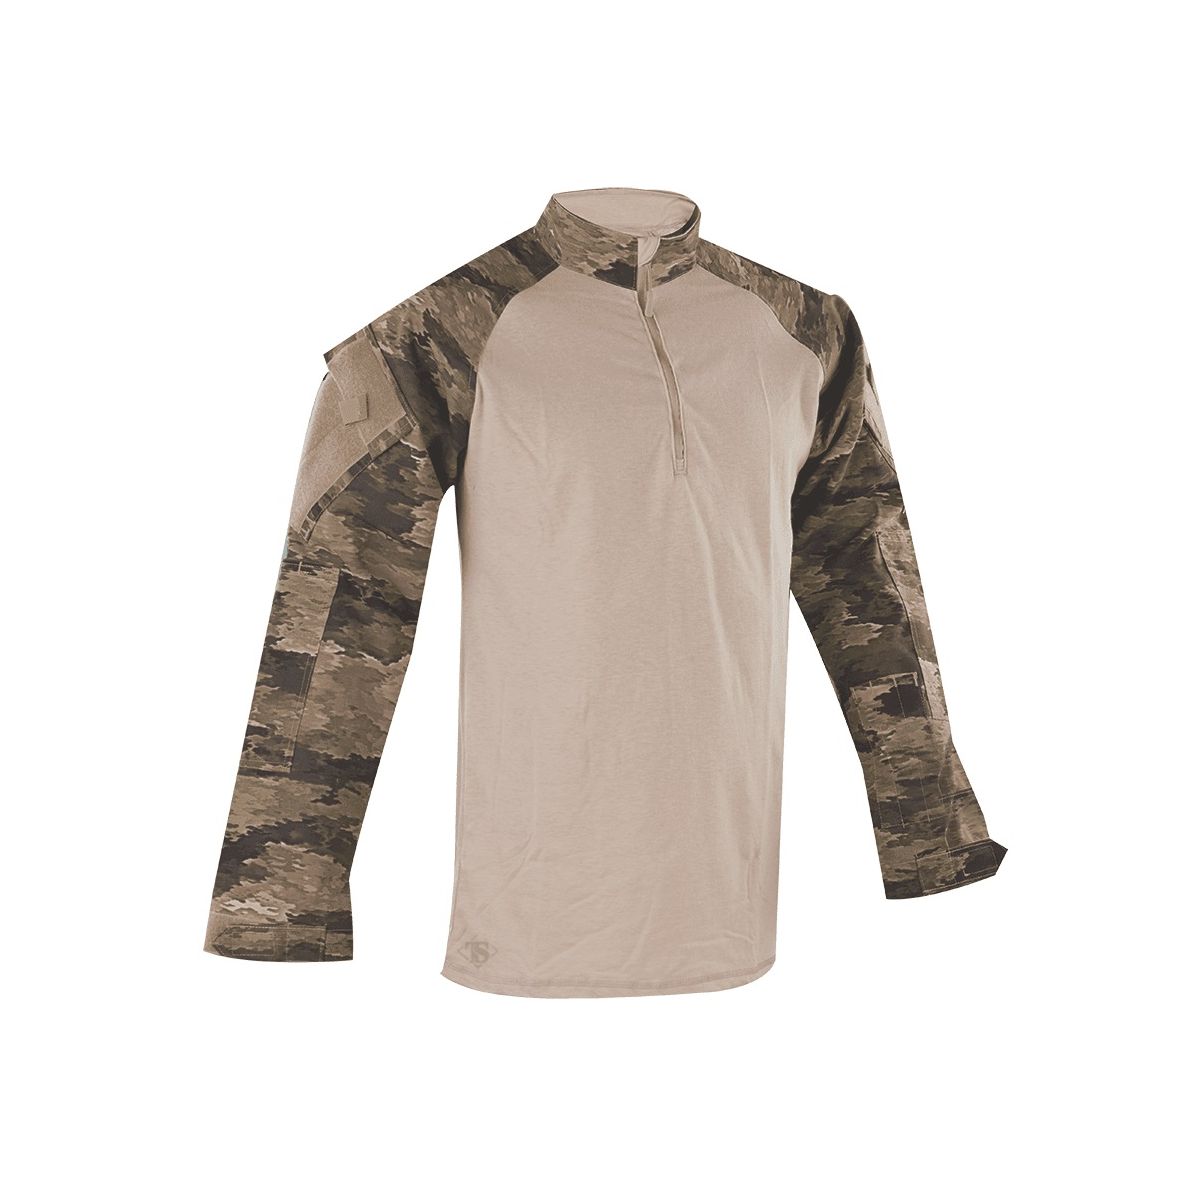 TRU-SPEC Tactical Combat Shirt COMBAT TRU 1/4 ZIP A-TACS iX